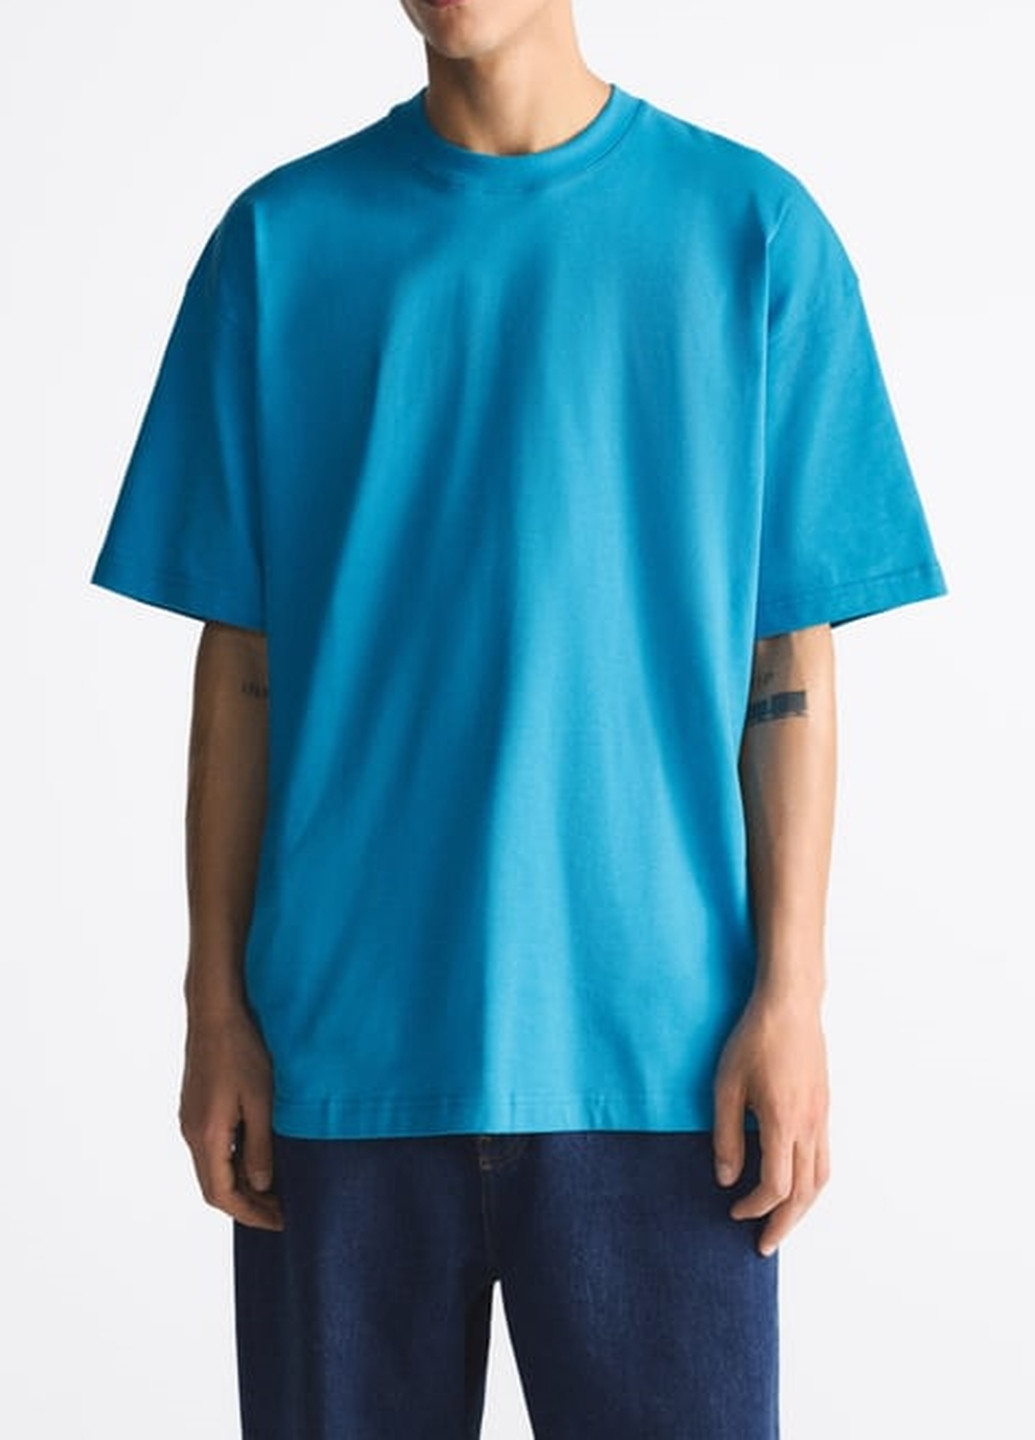 Блакитна футболка Zara